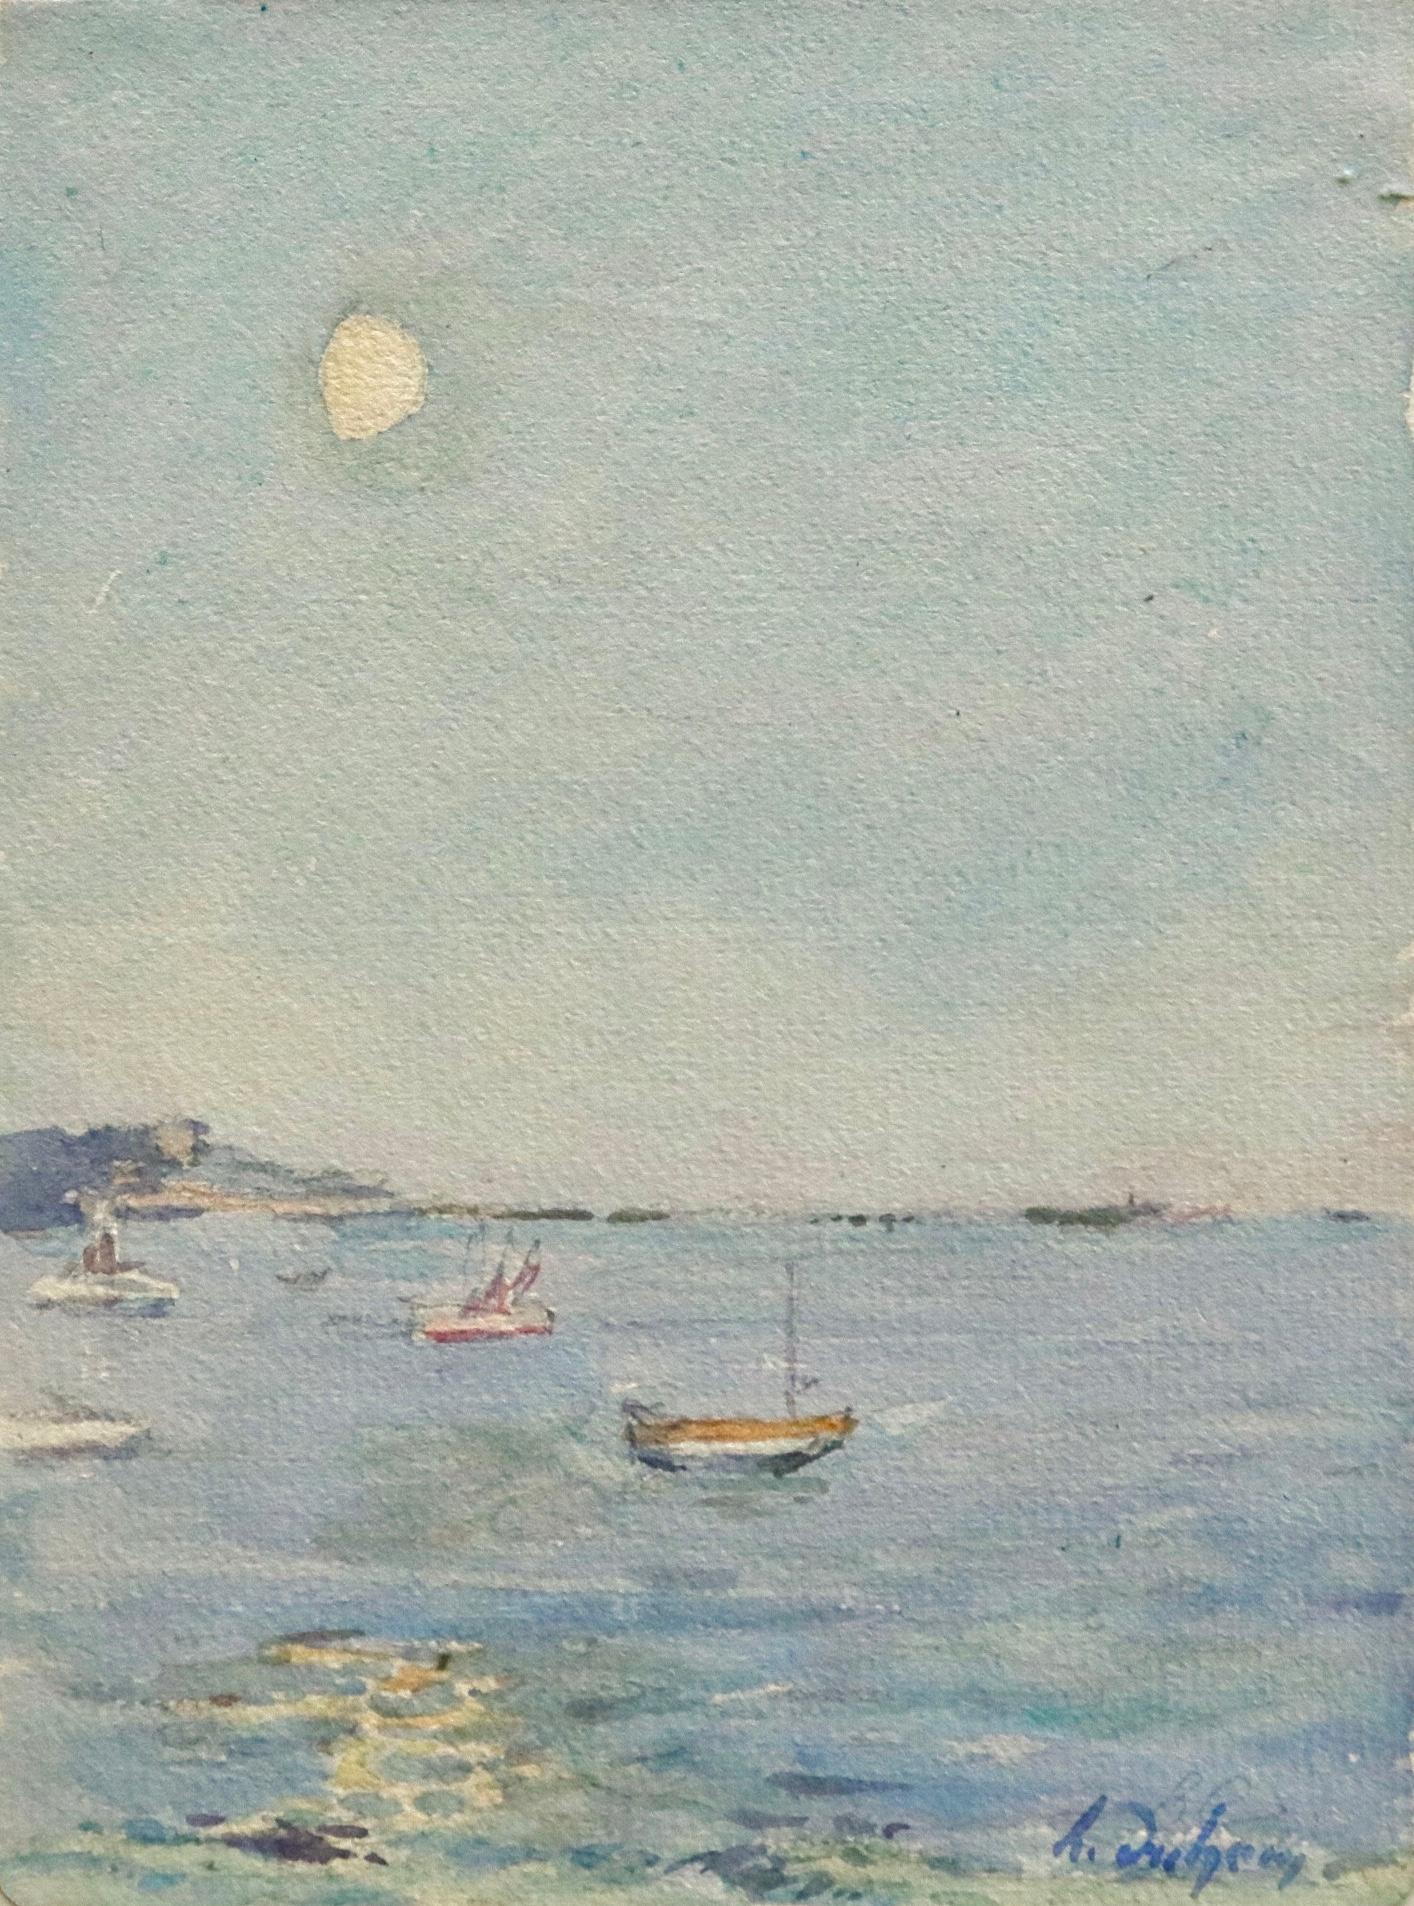 Aquarell auf Papier um 1925 von Henri Duhem:: das Boote auf einem ruhigen:: ruhigen Meer mit hoch am Himmel stehender Sonne zeigt. Rückseitig unten rechts mit den Angaben des Künstlers zum Gemälde signiert. Dieses Gemälde ist derzeit nicht gerahmt::